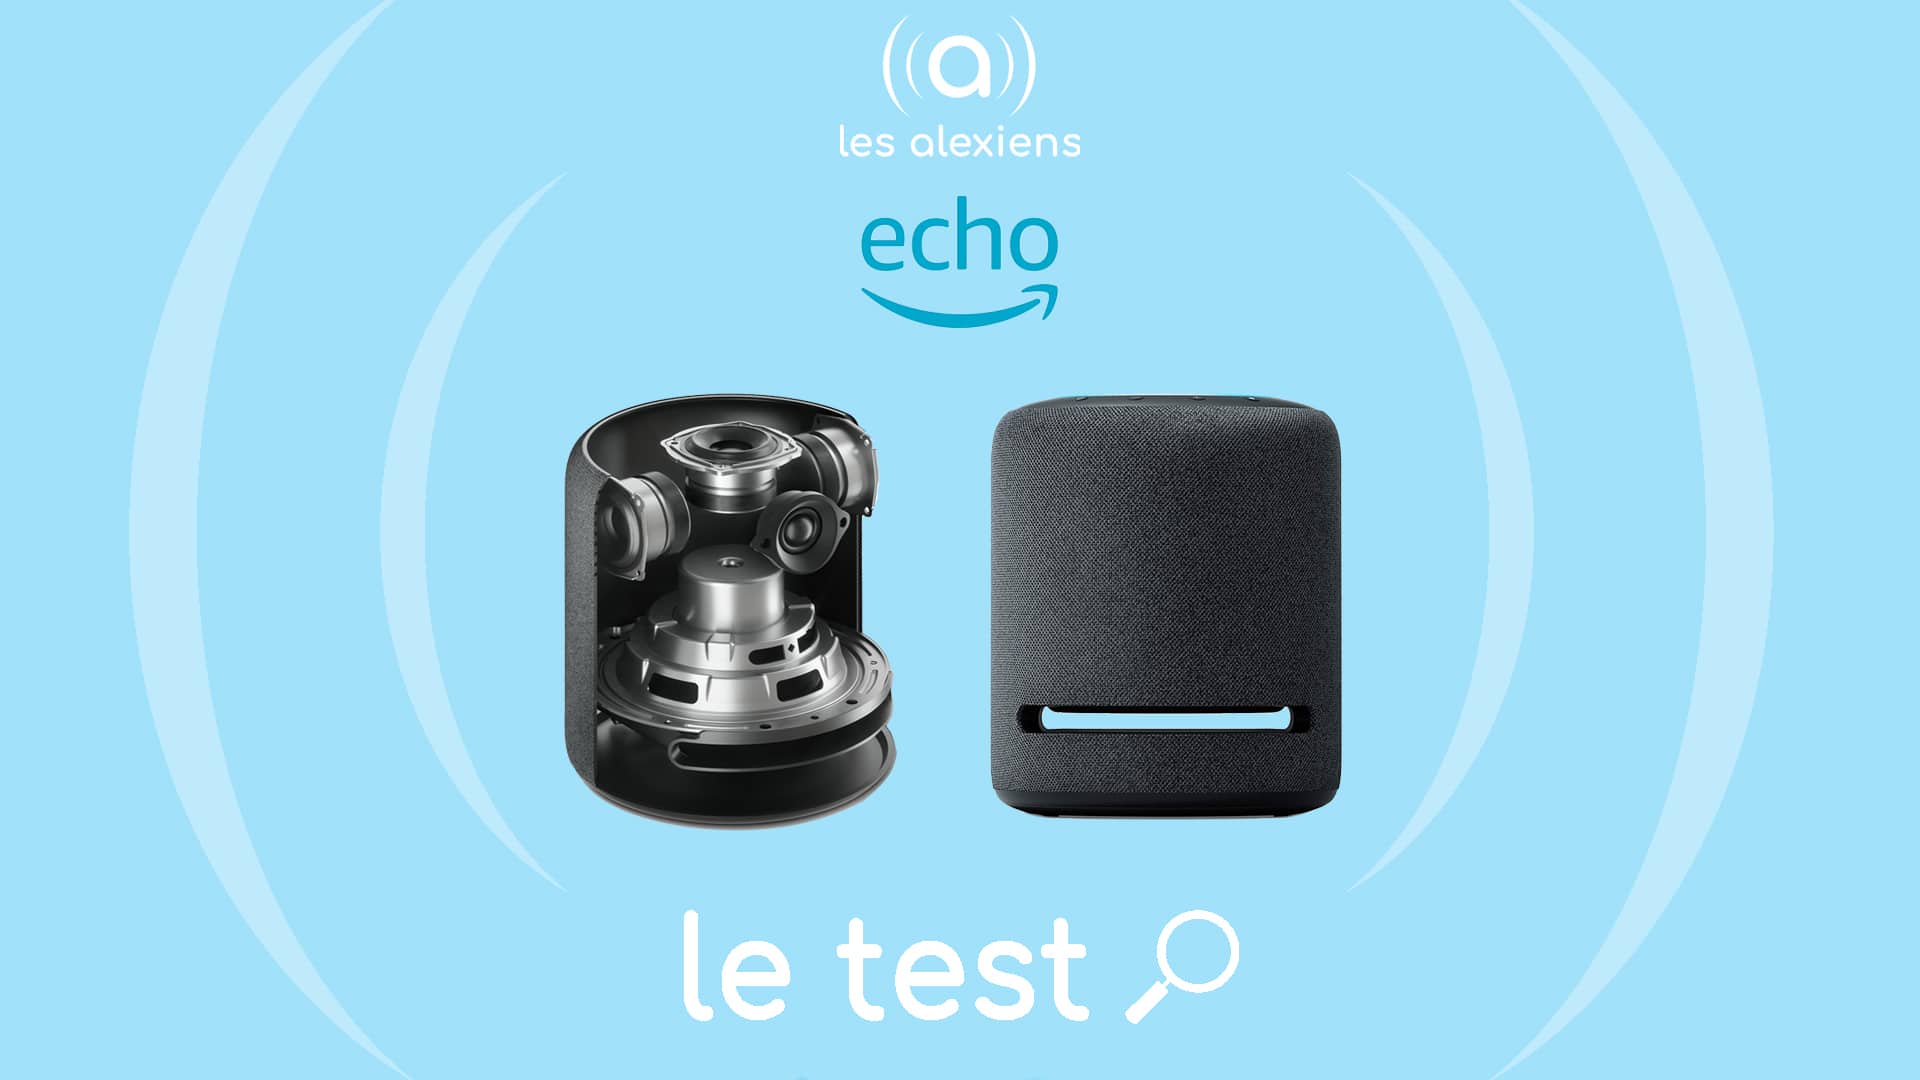 Echo Studio  Notre enceinte connectée Bluetooth et Wi-Fi aux